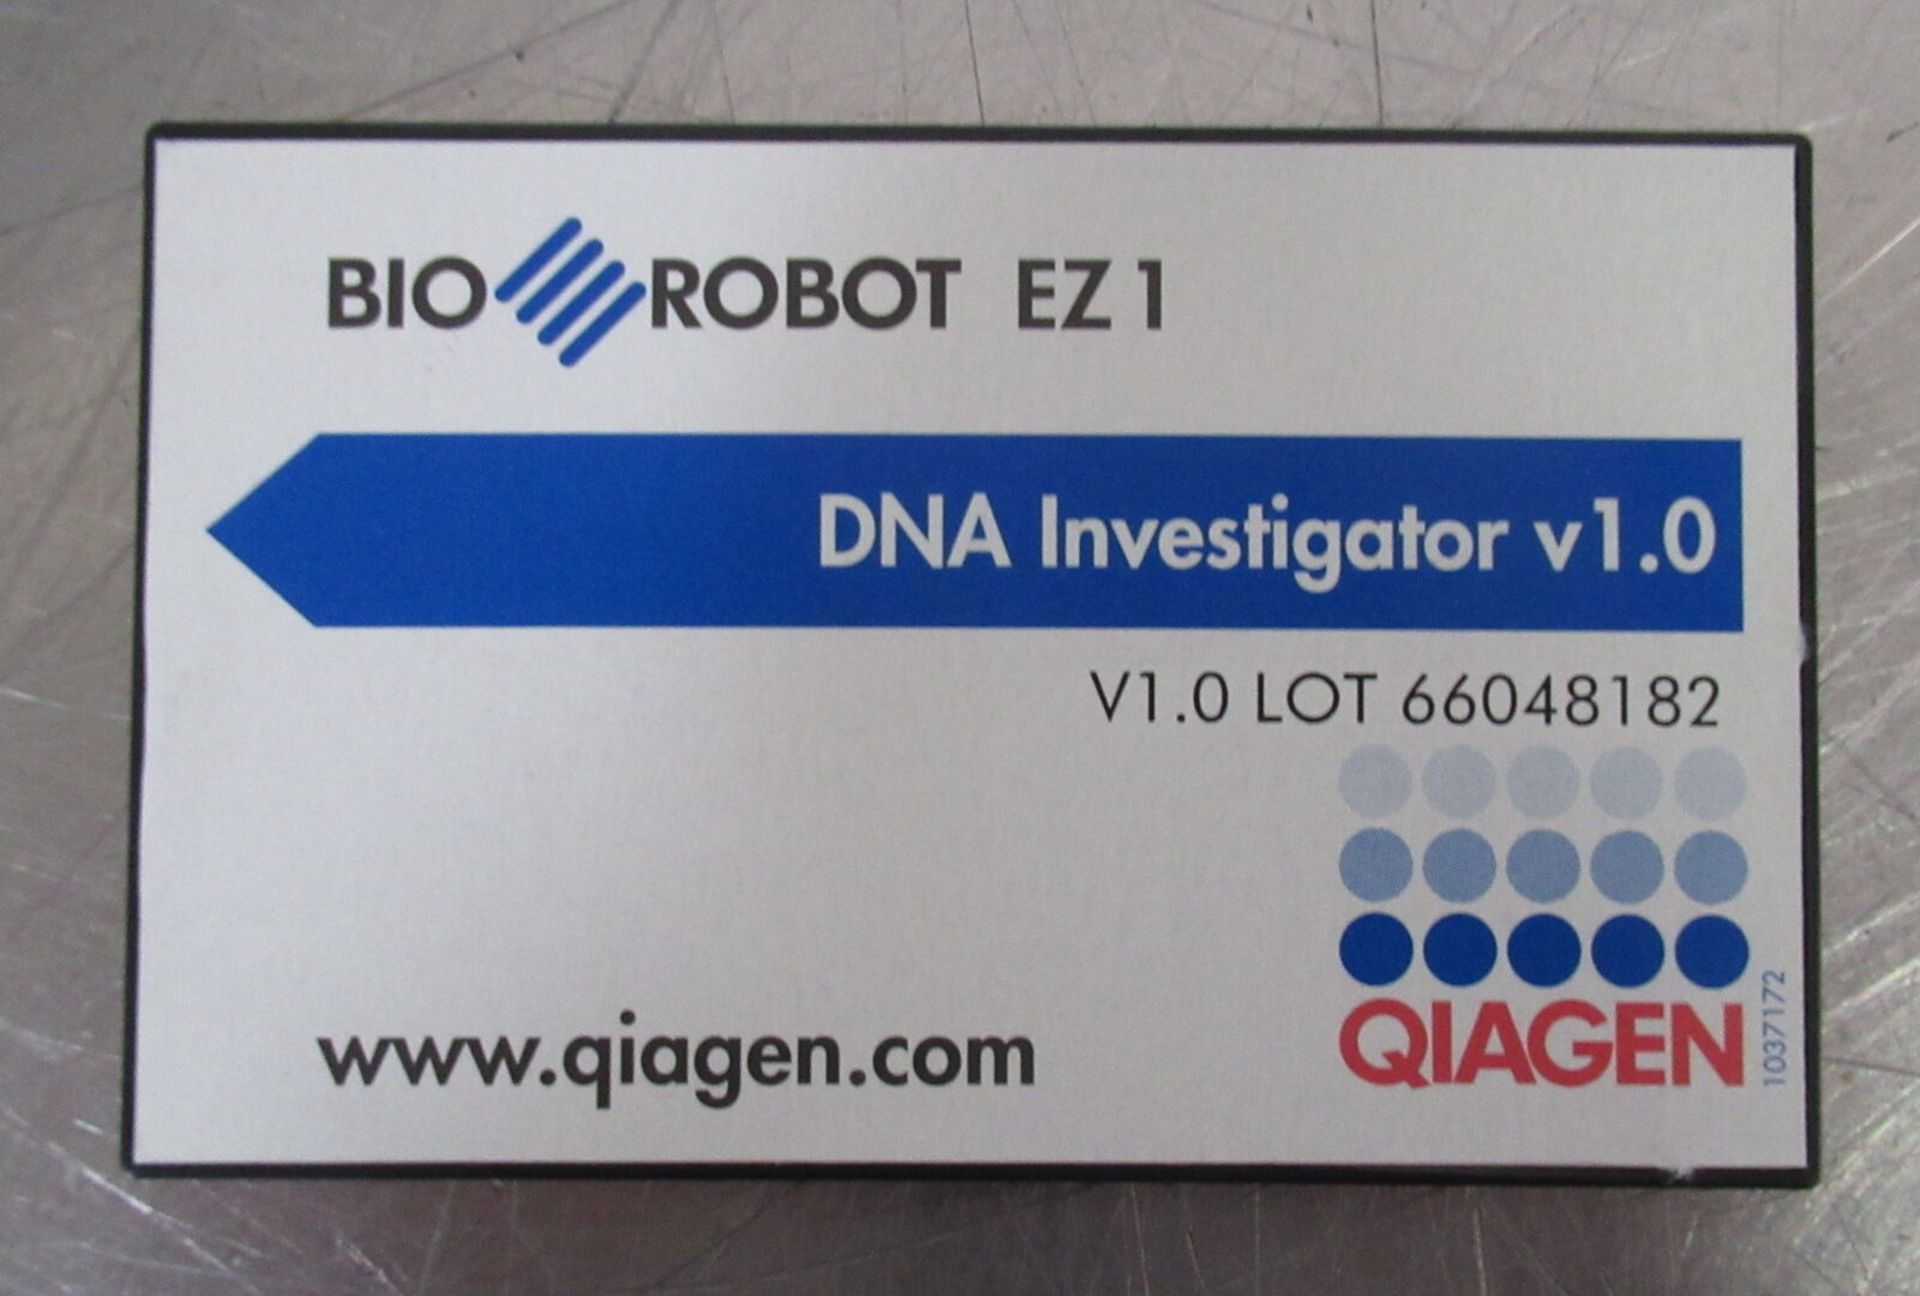 Qiagen BioRobot EZ1 DNA Workstation w/ DNA Investigator v1.0 Flash Card - Image 5 of 7